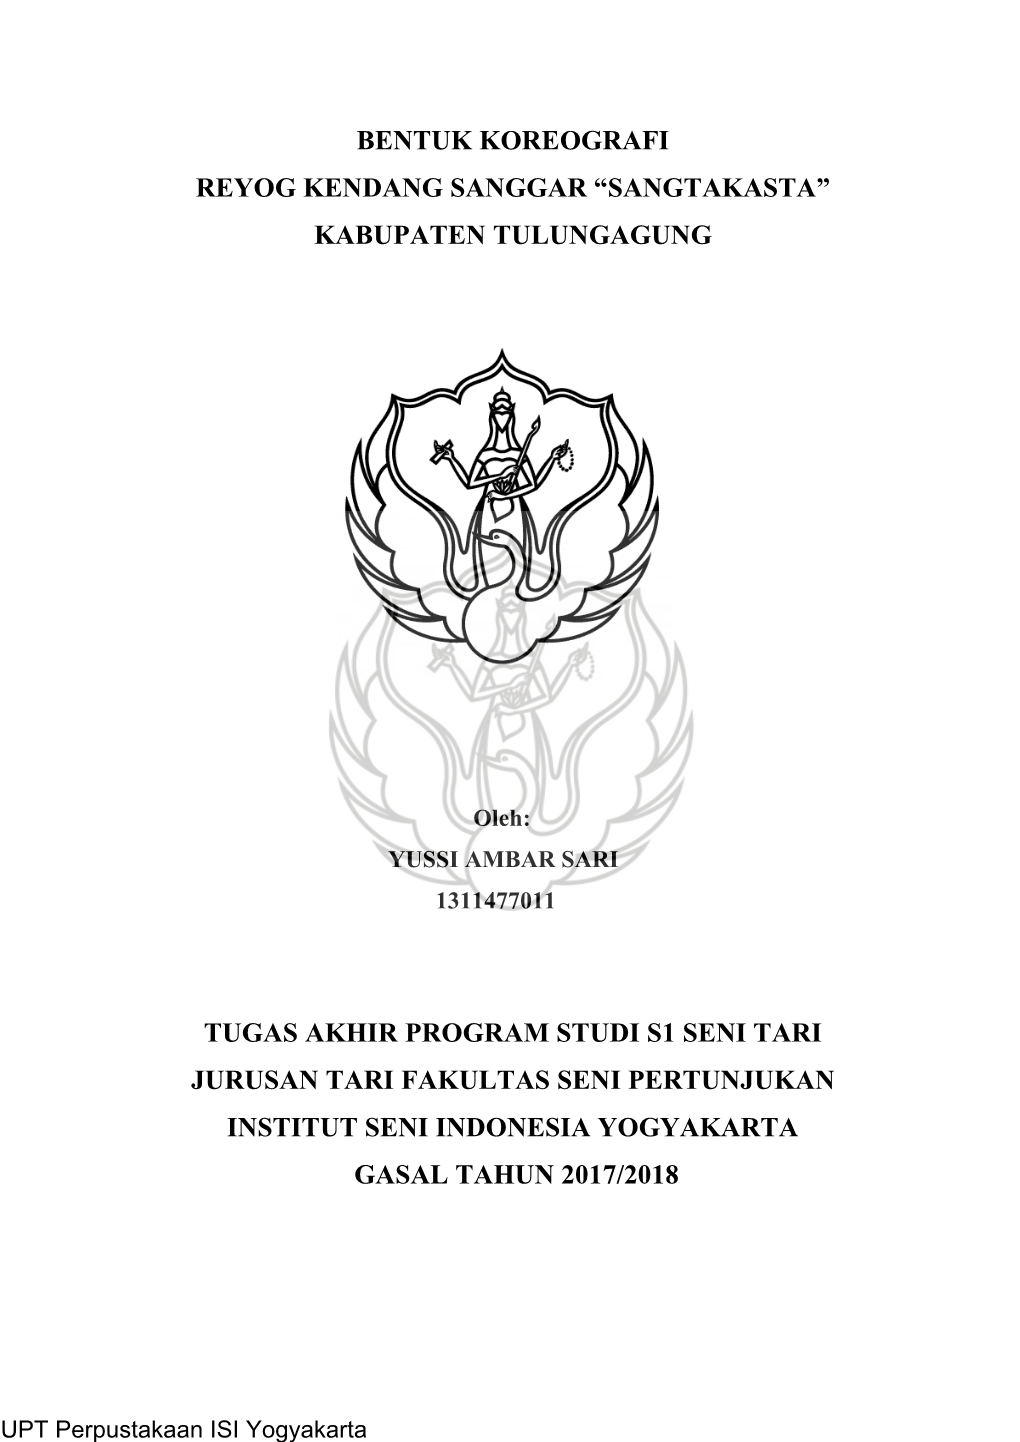 Bentuk Koreografi Reyog Kendang Sanggar “Sangtakasta” Kabupaten Tulungagung Tugas Akhir Program Studi S1 Seni Tari Jurusan